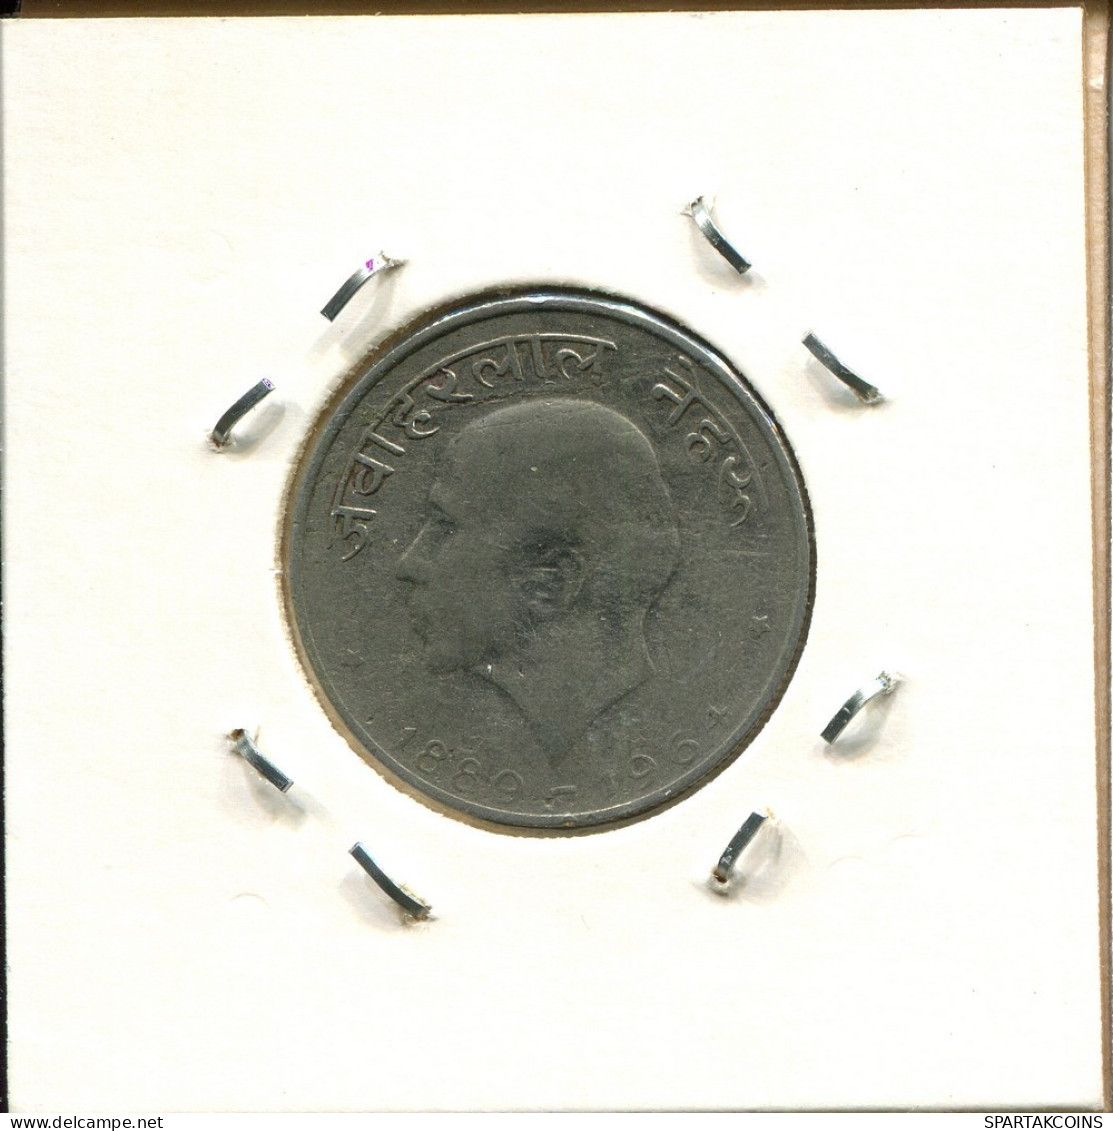 50 PAISE 1964 INDIA Coin #BA099.U.A - Inde